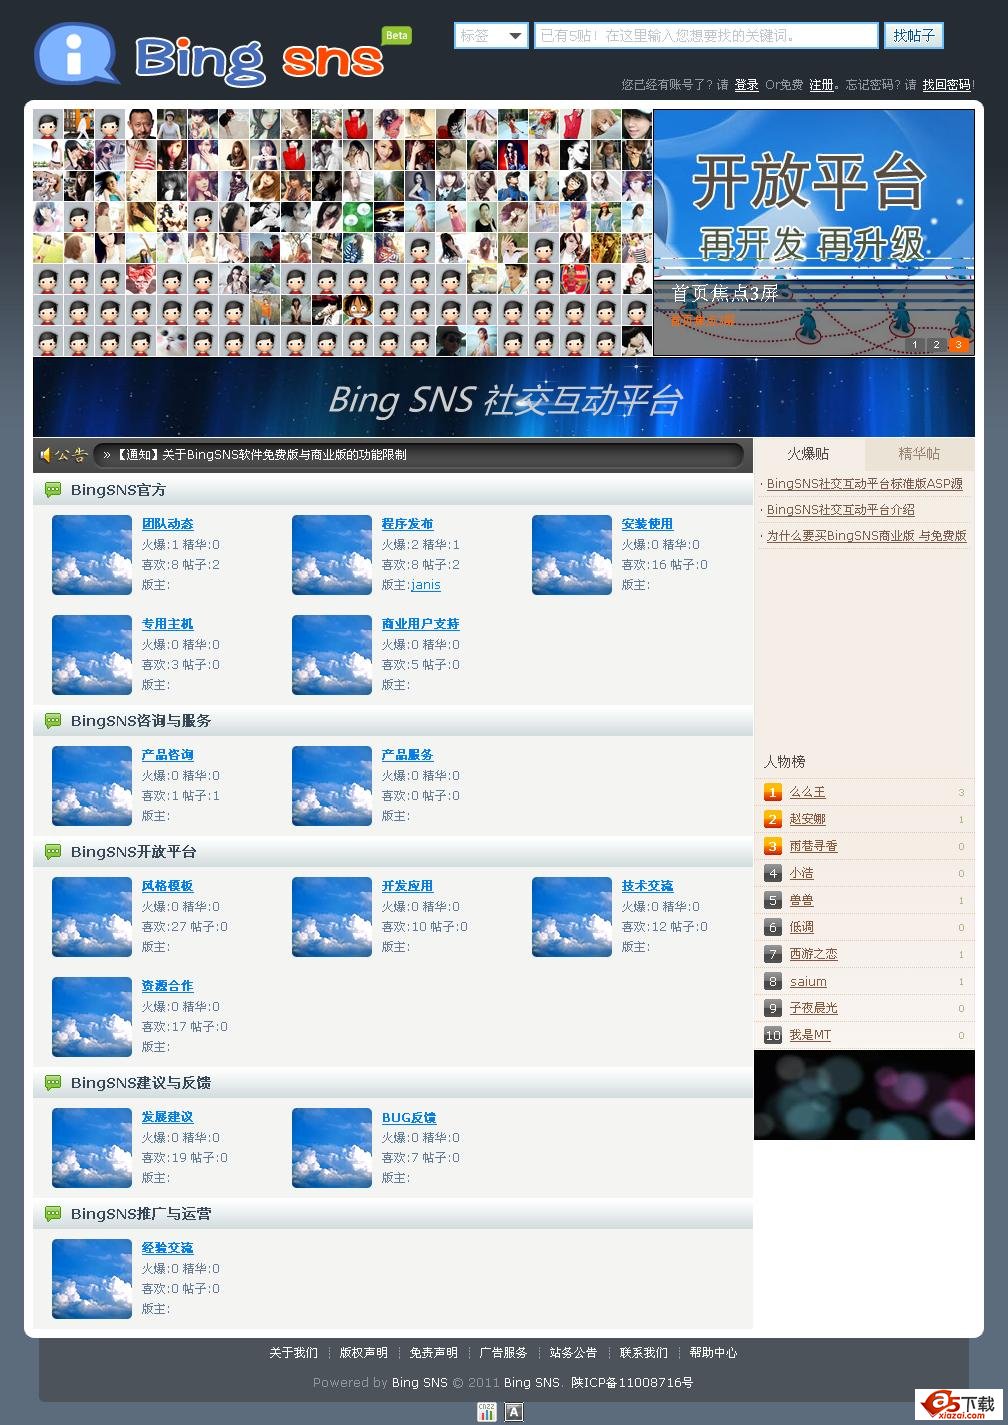 BingSNS社交互动平台 V2.6 微博控插图源码资源库